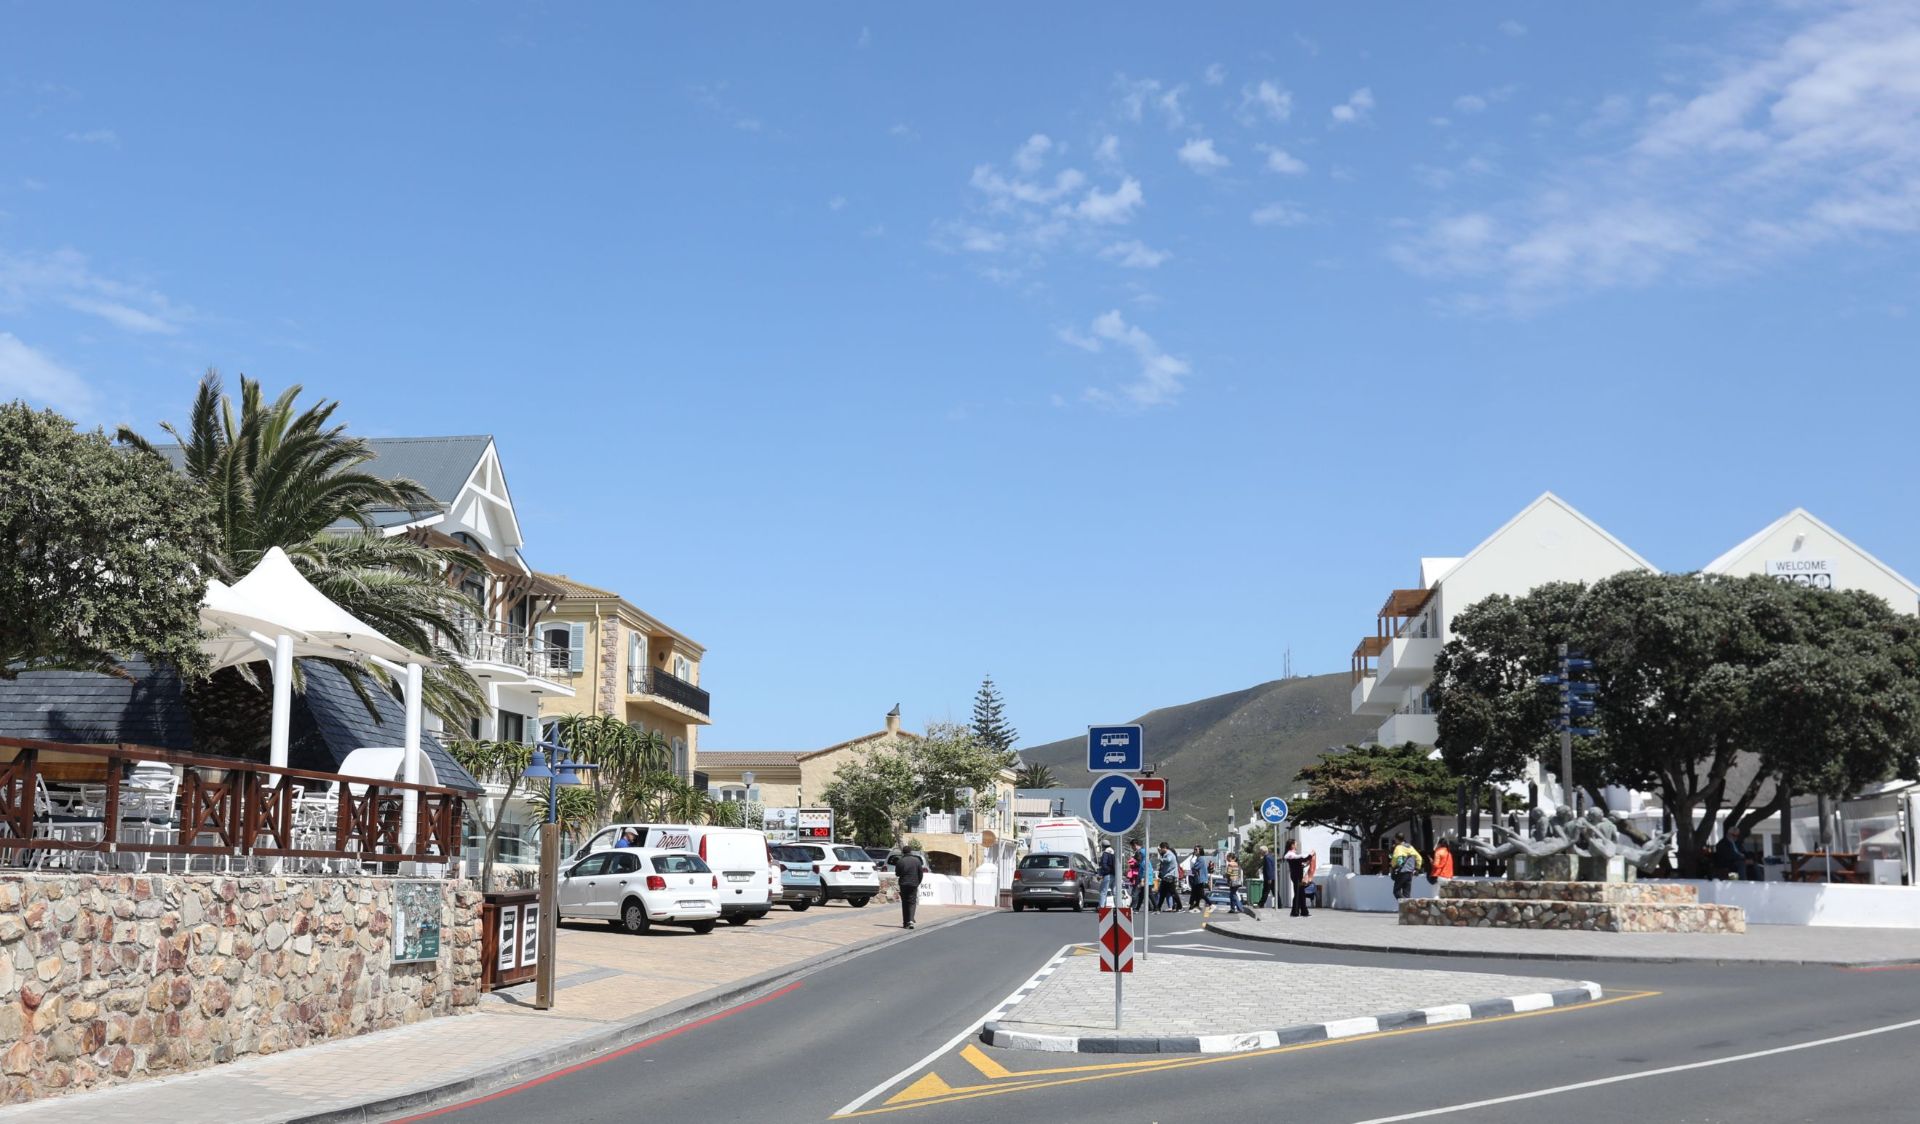 南非赫曼努斯小镇。位于南非南端沿印度洋展开，一座旅游小镇，海边景色非常漂亮。